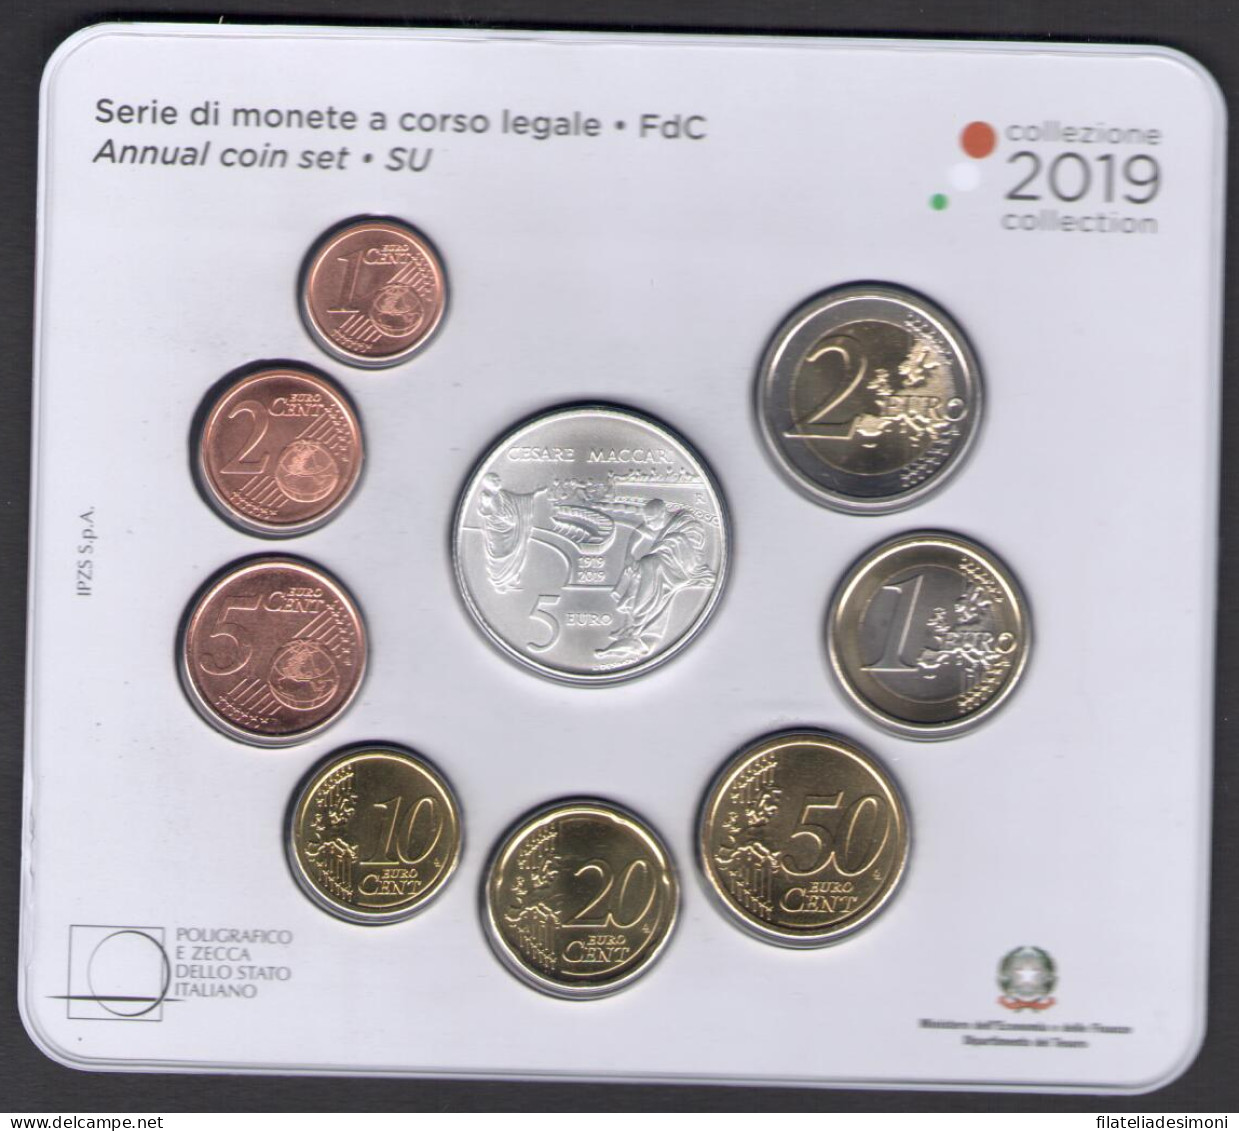 2019 Italia, Repubblica Italiana, Serie Di Monete A Corso Legale, Cesare Maccari, 9 Valori - FDC - Jahressets & Polierte Platten